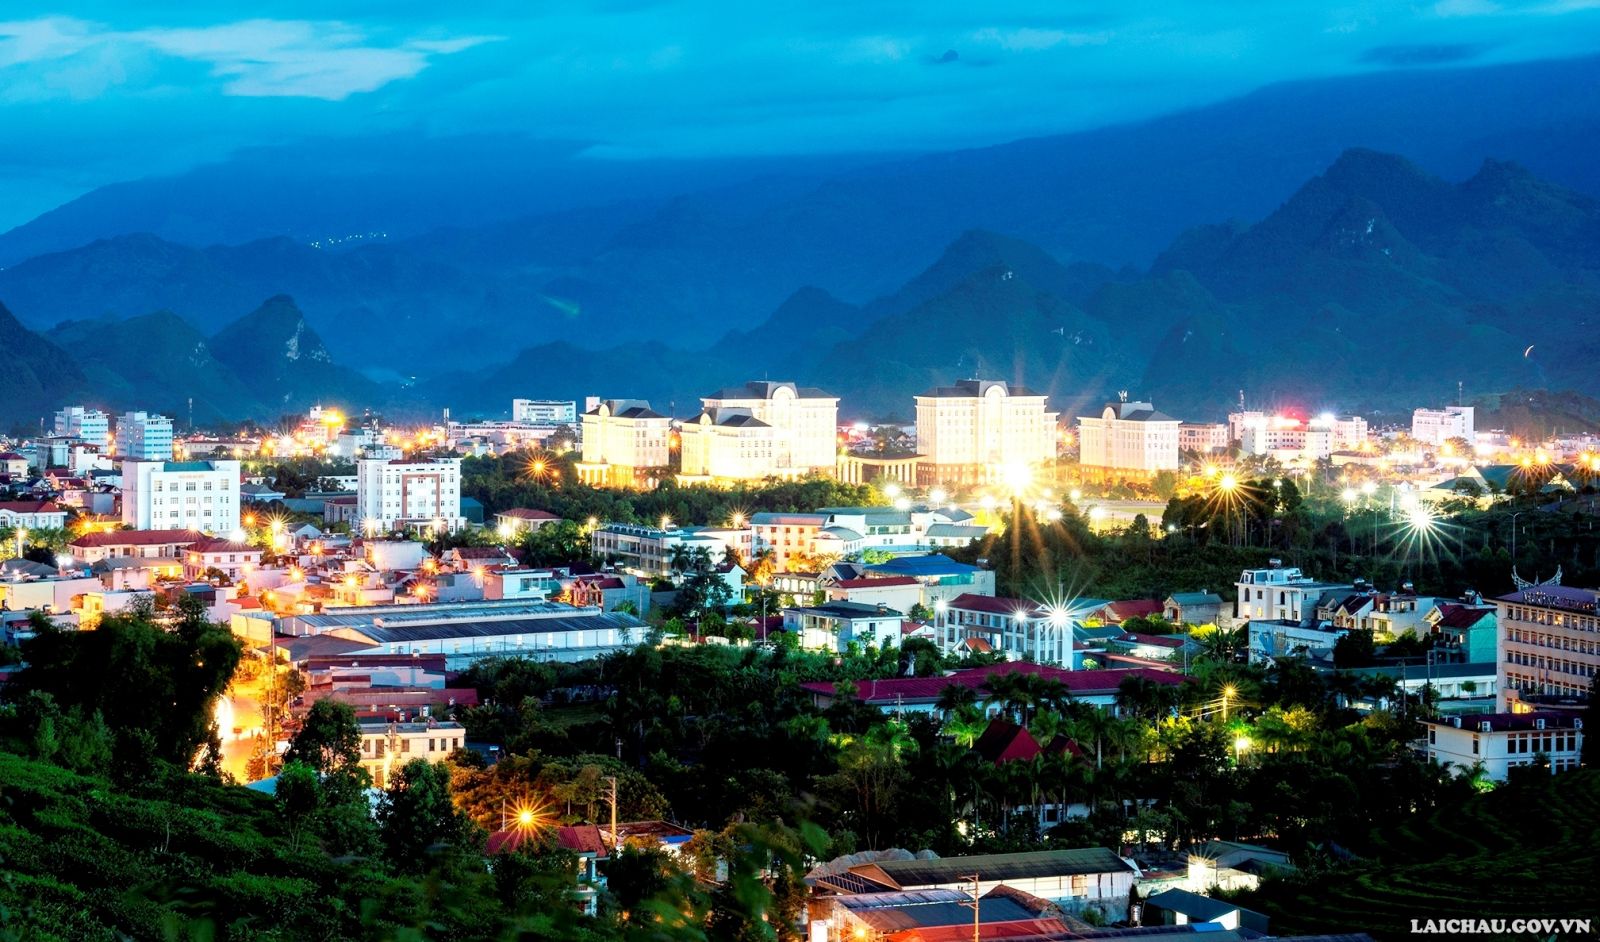 Thành phố Lai Châu ngày càng phát triển. (Ảnh: Nguyễn Thắng)